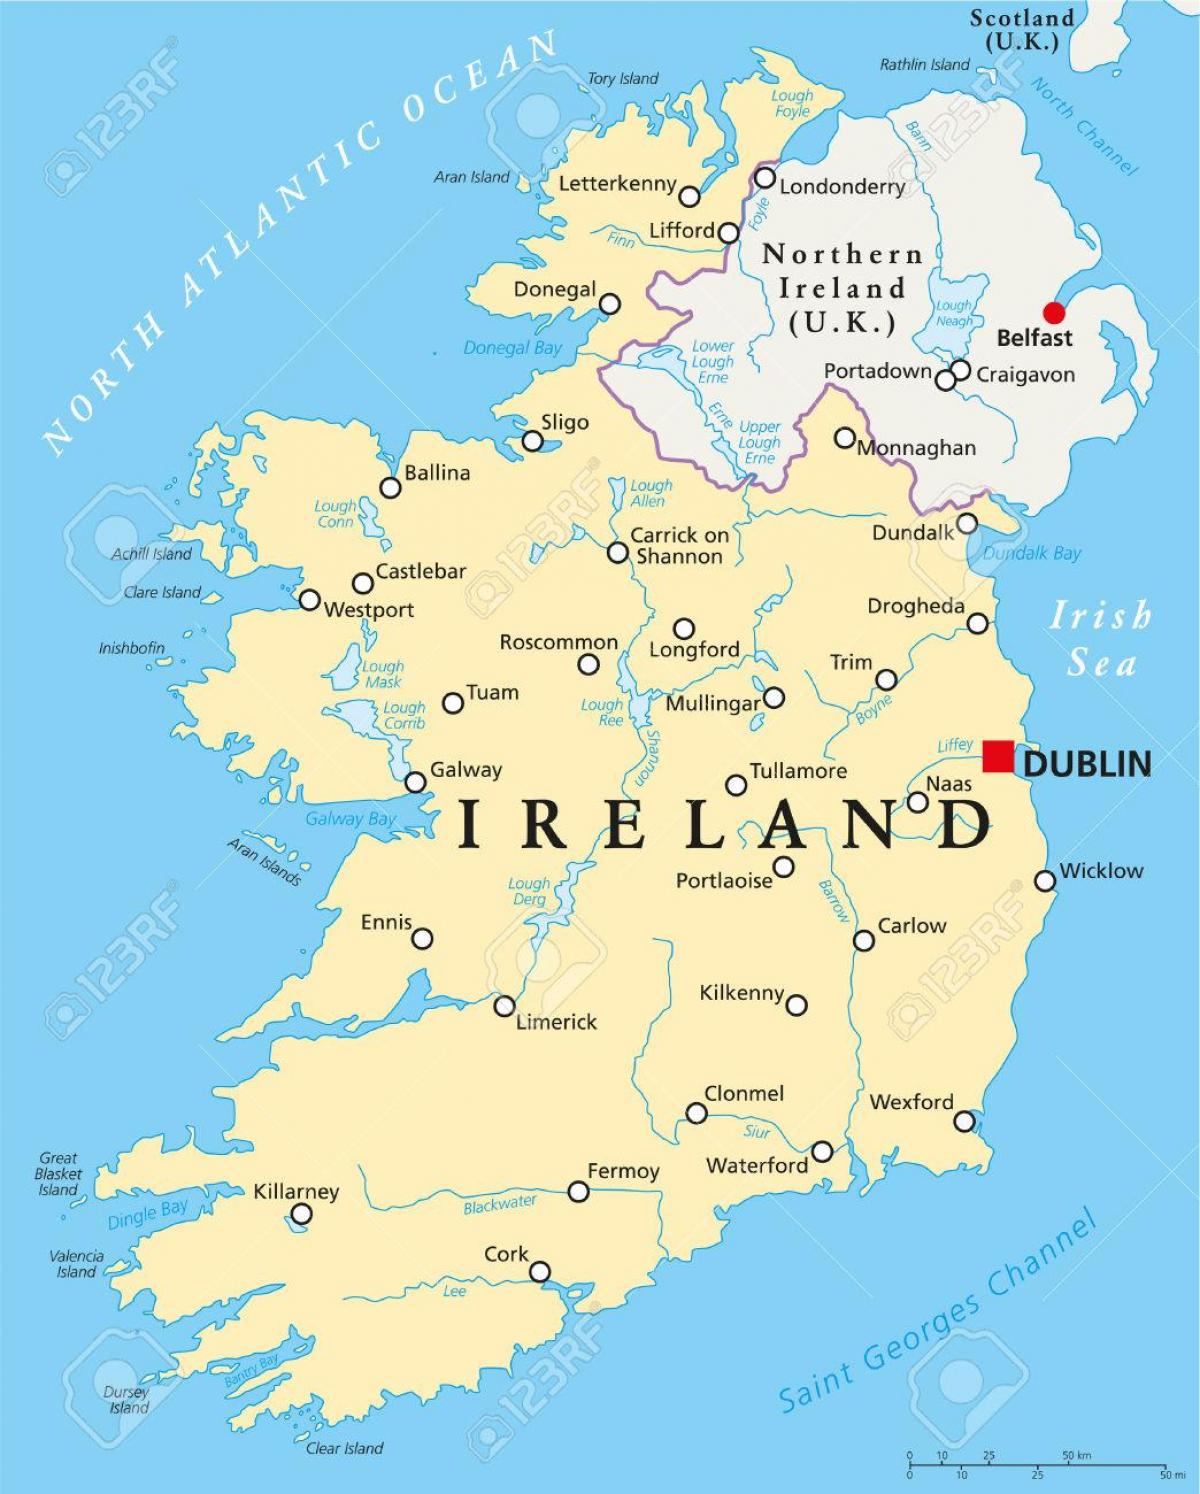 Dublin iirimaa kaart